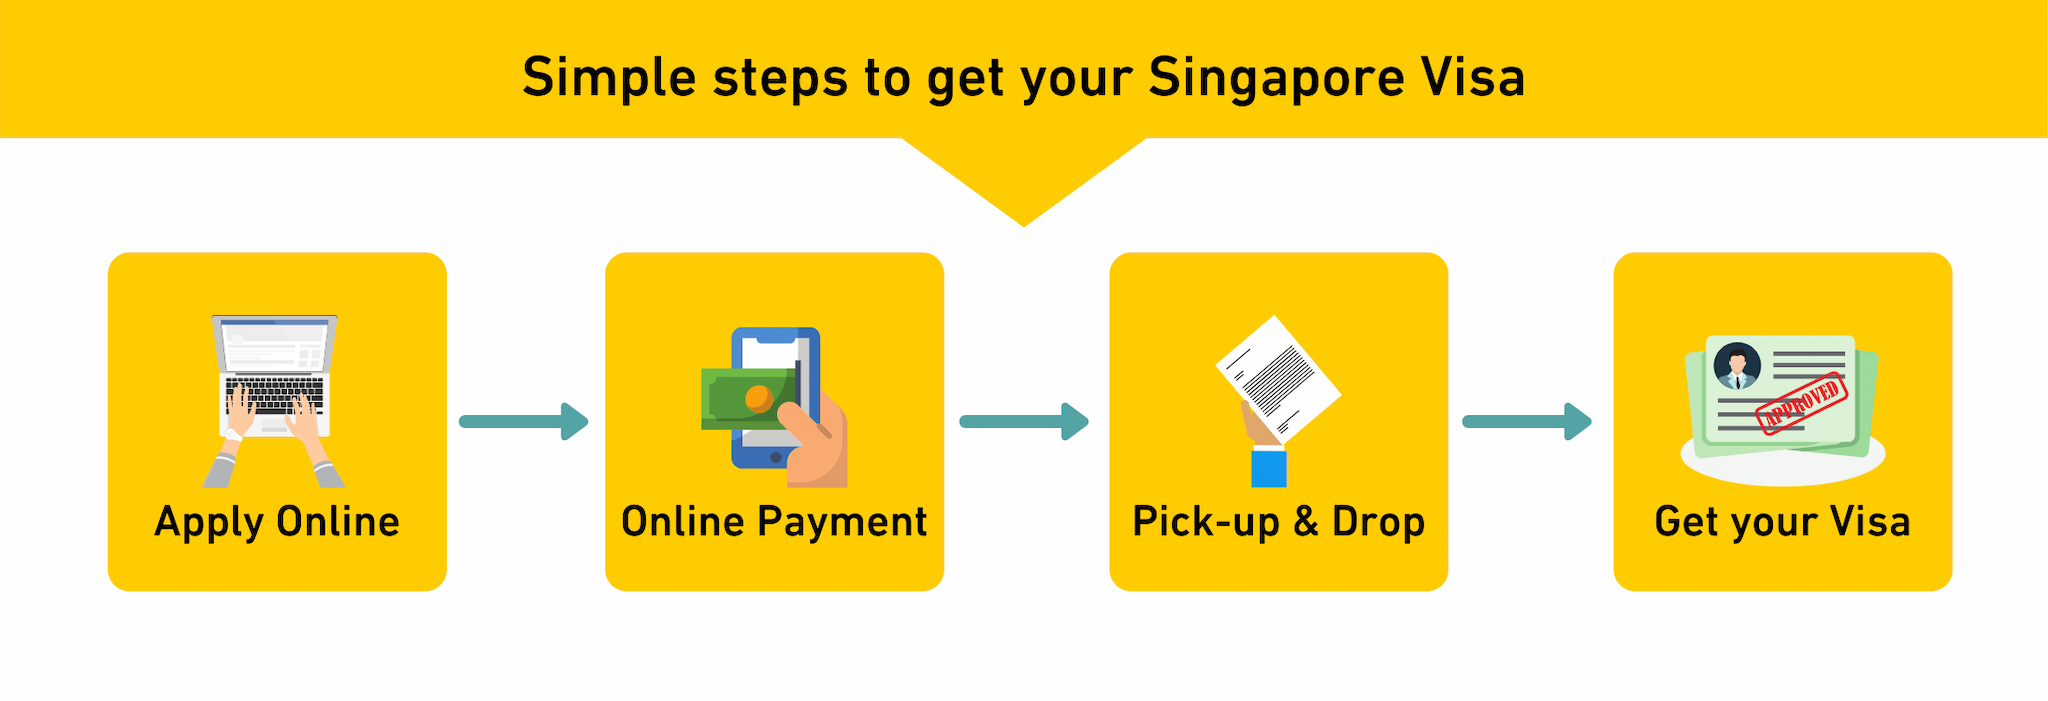 Steps to get Singapore visa